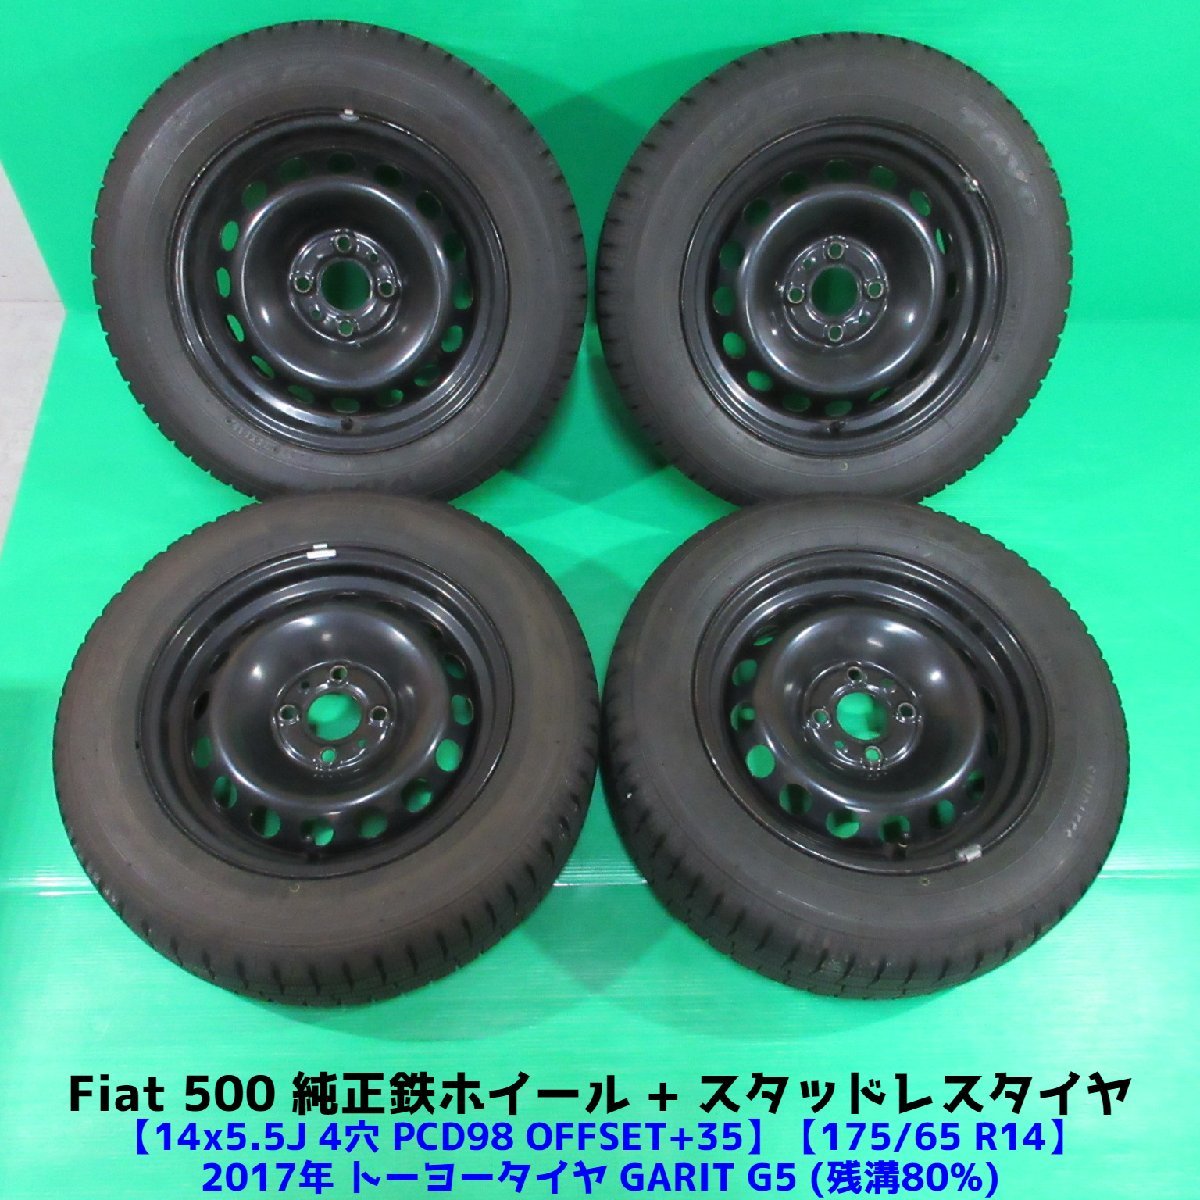 公式日本版 タイヤ溝バリ山インチアルミタイヤ4本セット送料込み